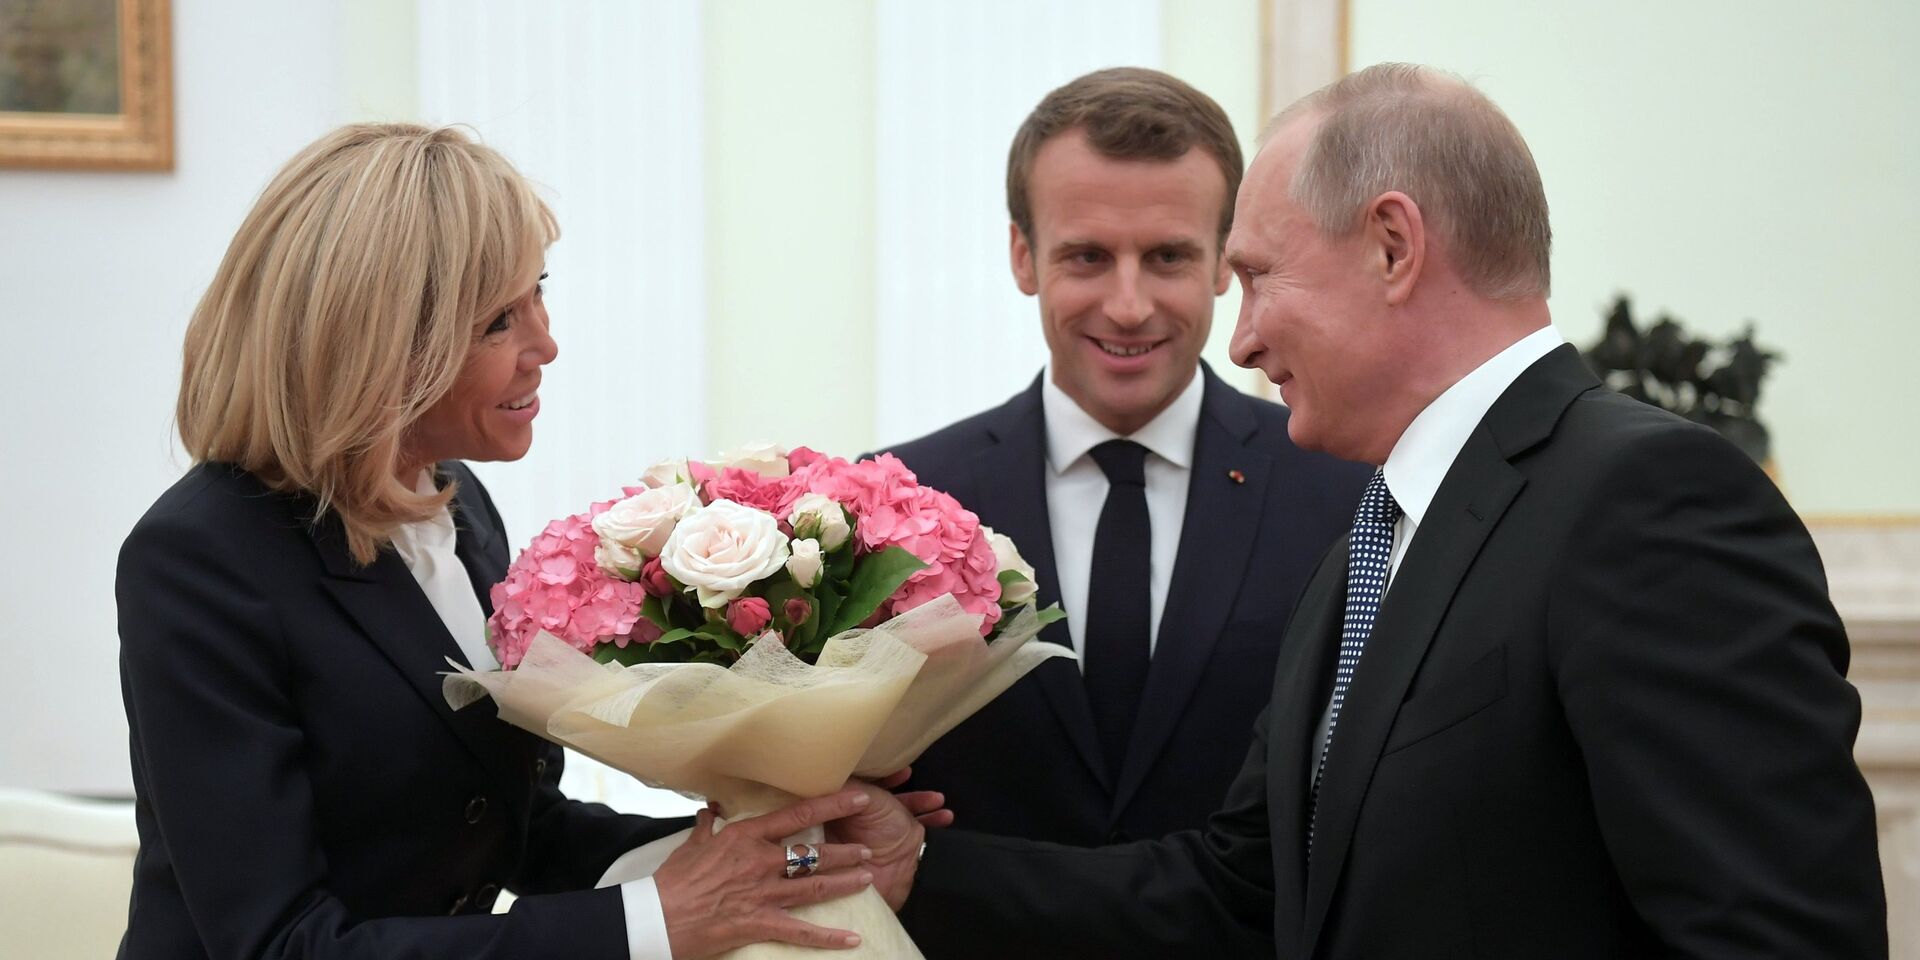 Президент РФ Владимир Путин и президент Франции Эммануэль Макрон с супругой Брижит во время встречи 15 июля 2018 - ИноСМИ, 1920, 07.05.2022